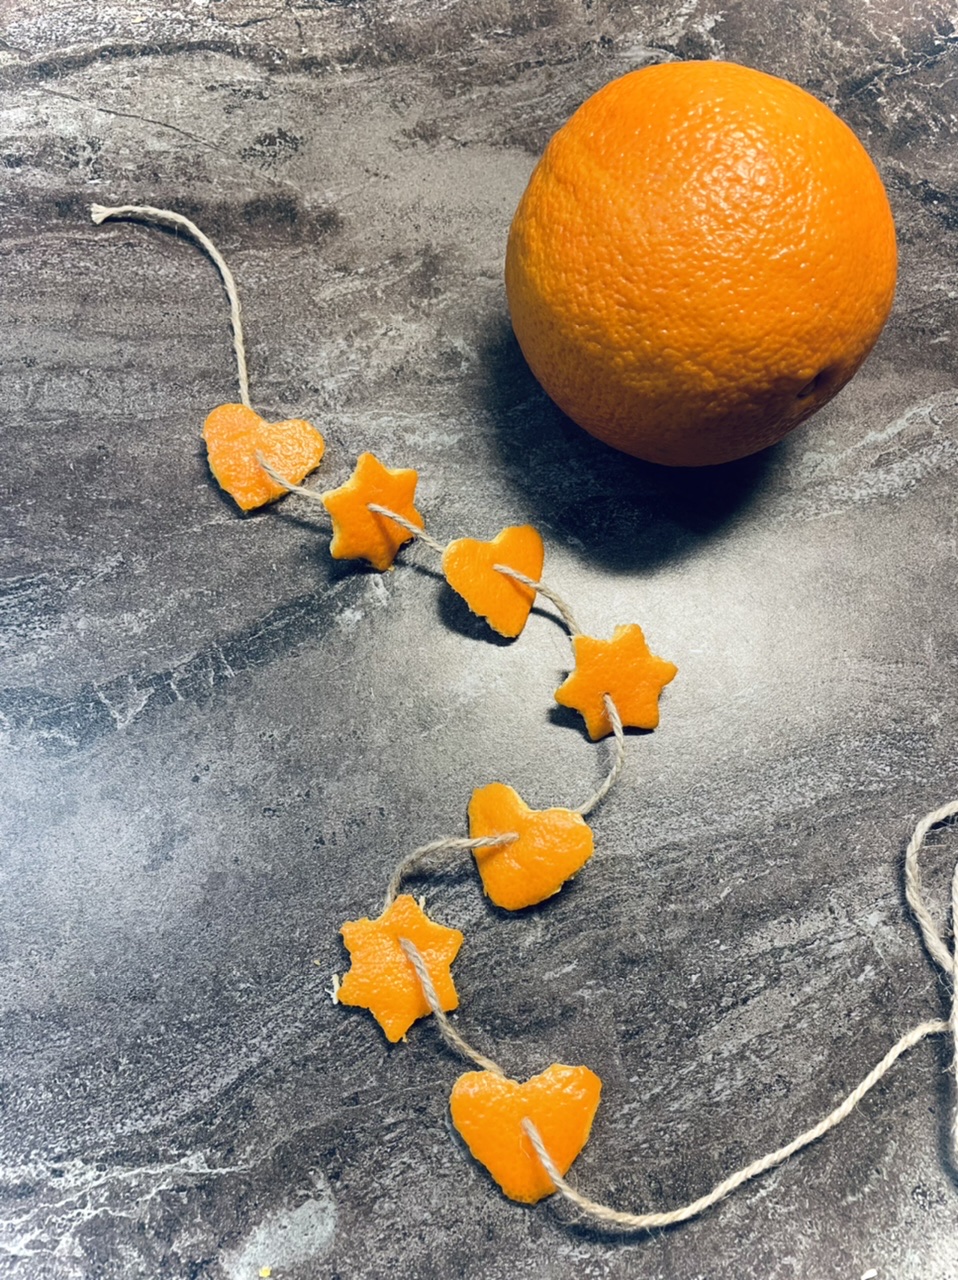 Bild zum Schritt 12 für das Bastel- und DIY-Abenteuer für Kinder: 'Für weitere Girlanden schält ihr weitere Orangen.'